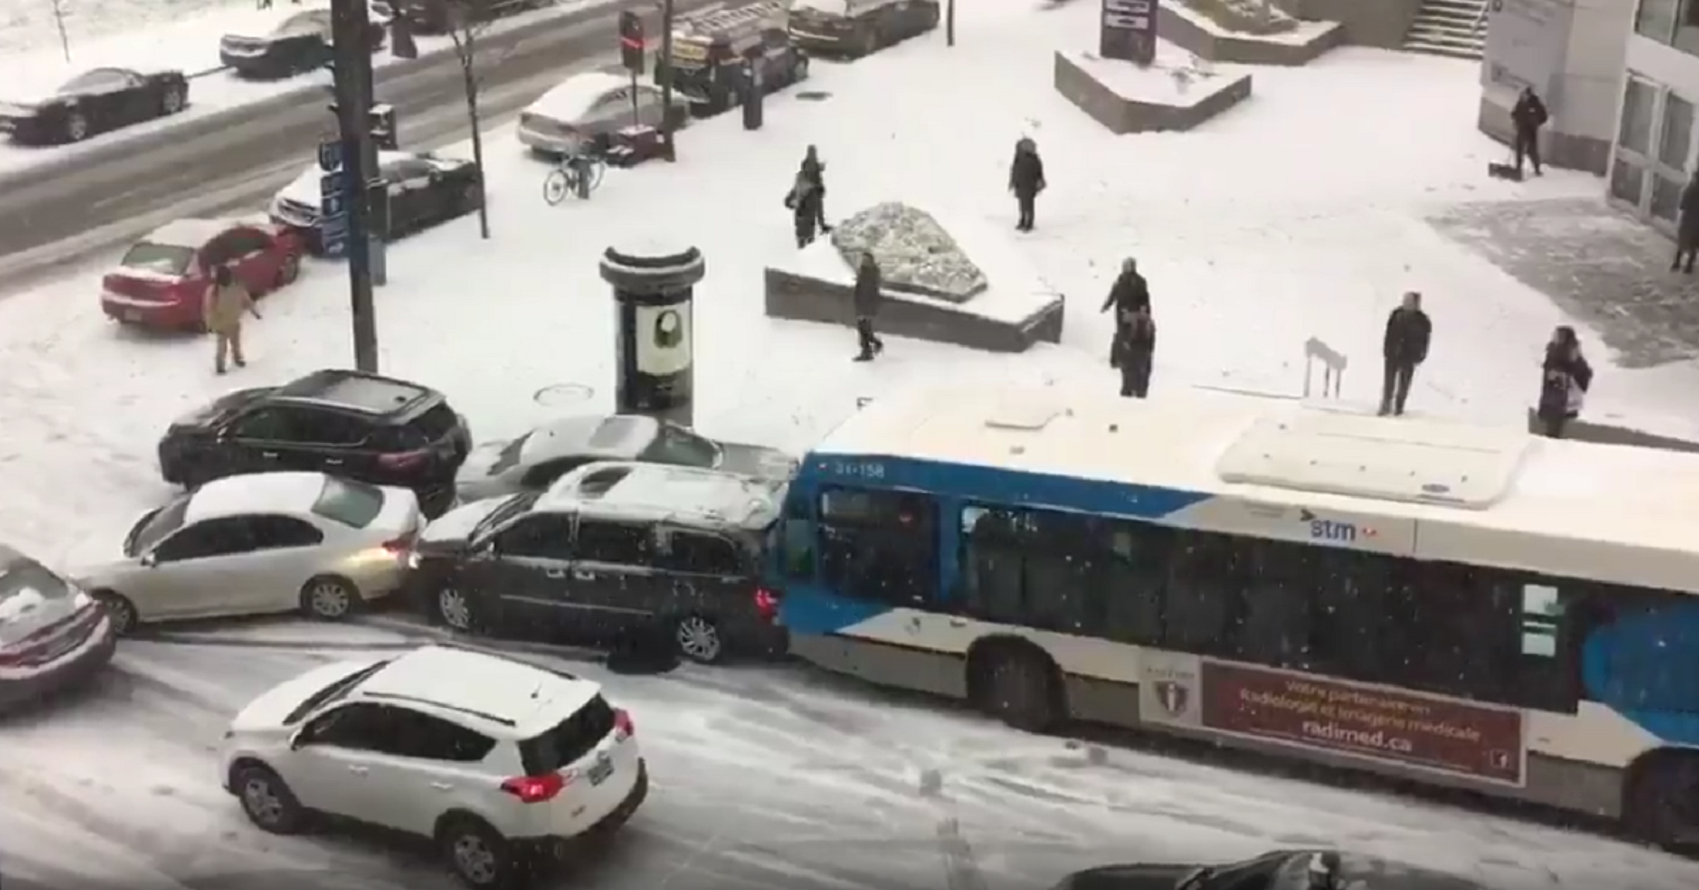 Relliscada múltiple de vehicles a Mont-real per una nevada